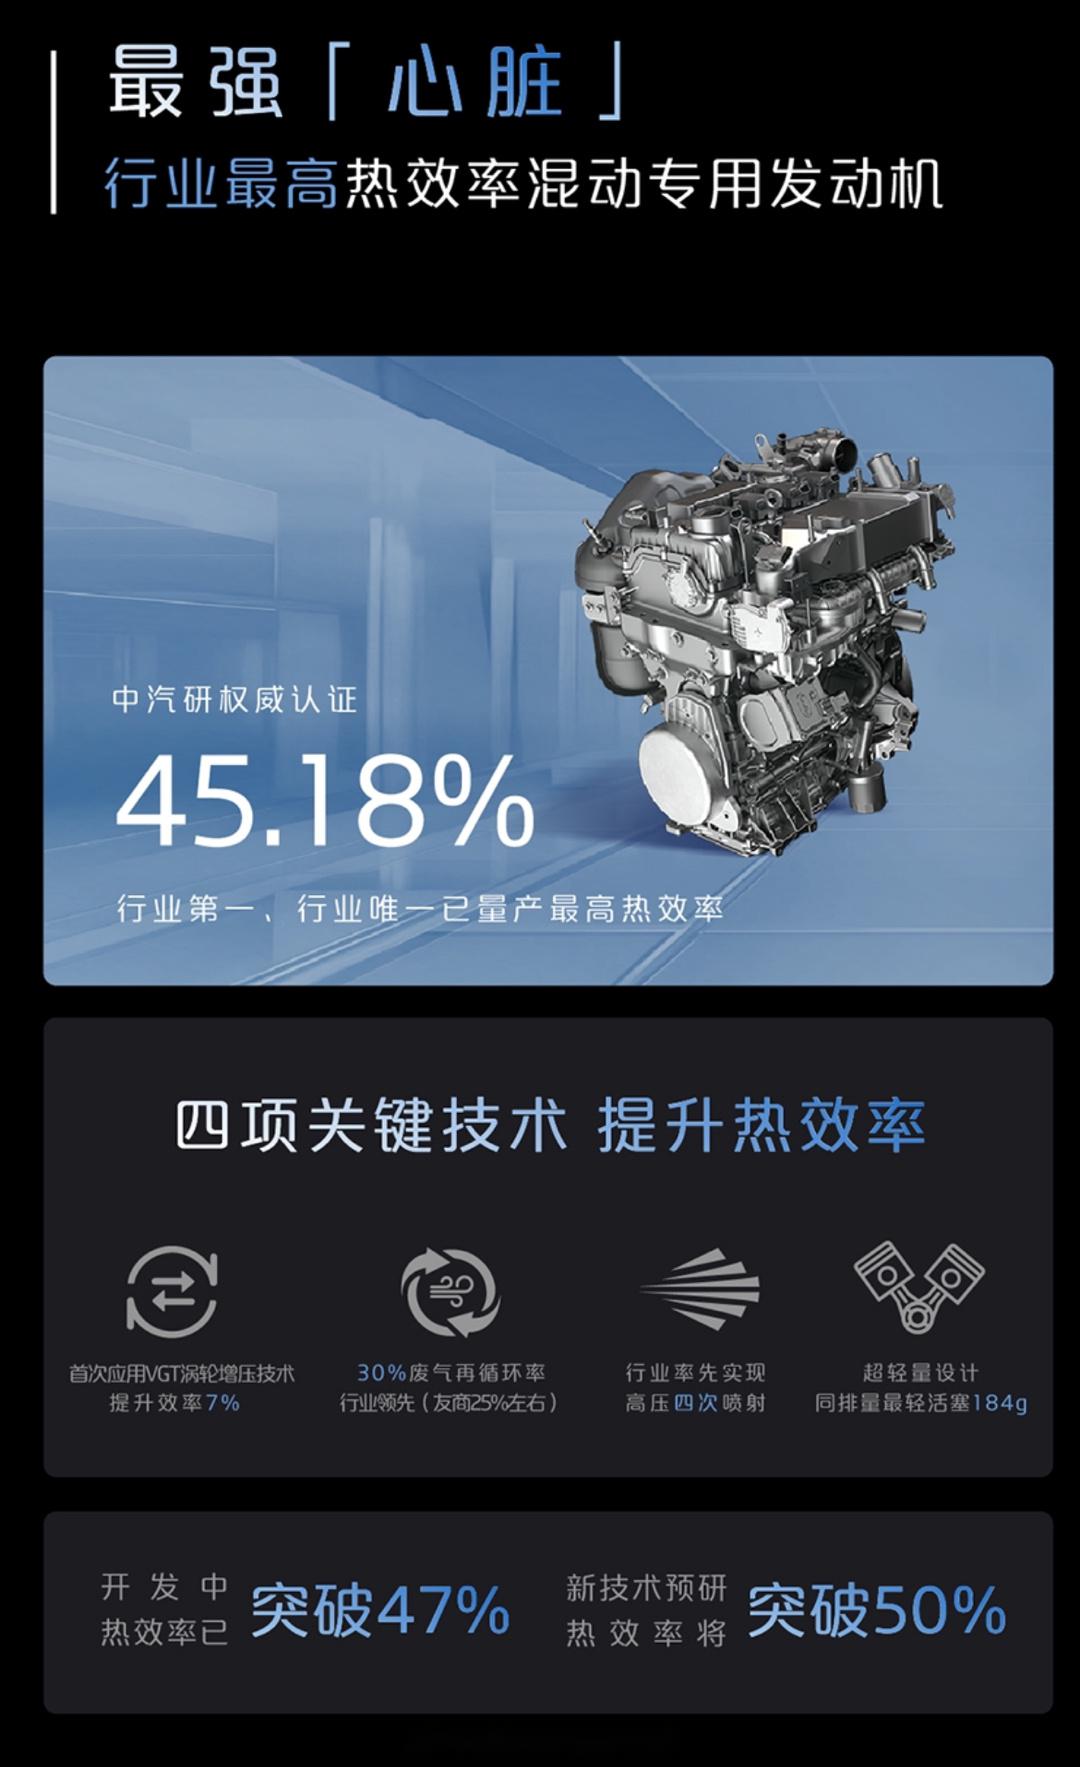 又来一个l7, 让我感兴趣的是,带着目前中国热效率最高的内燃机,大家在